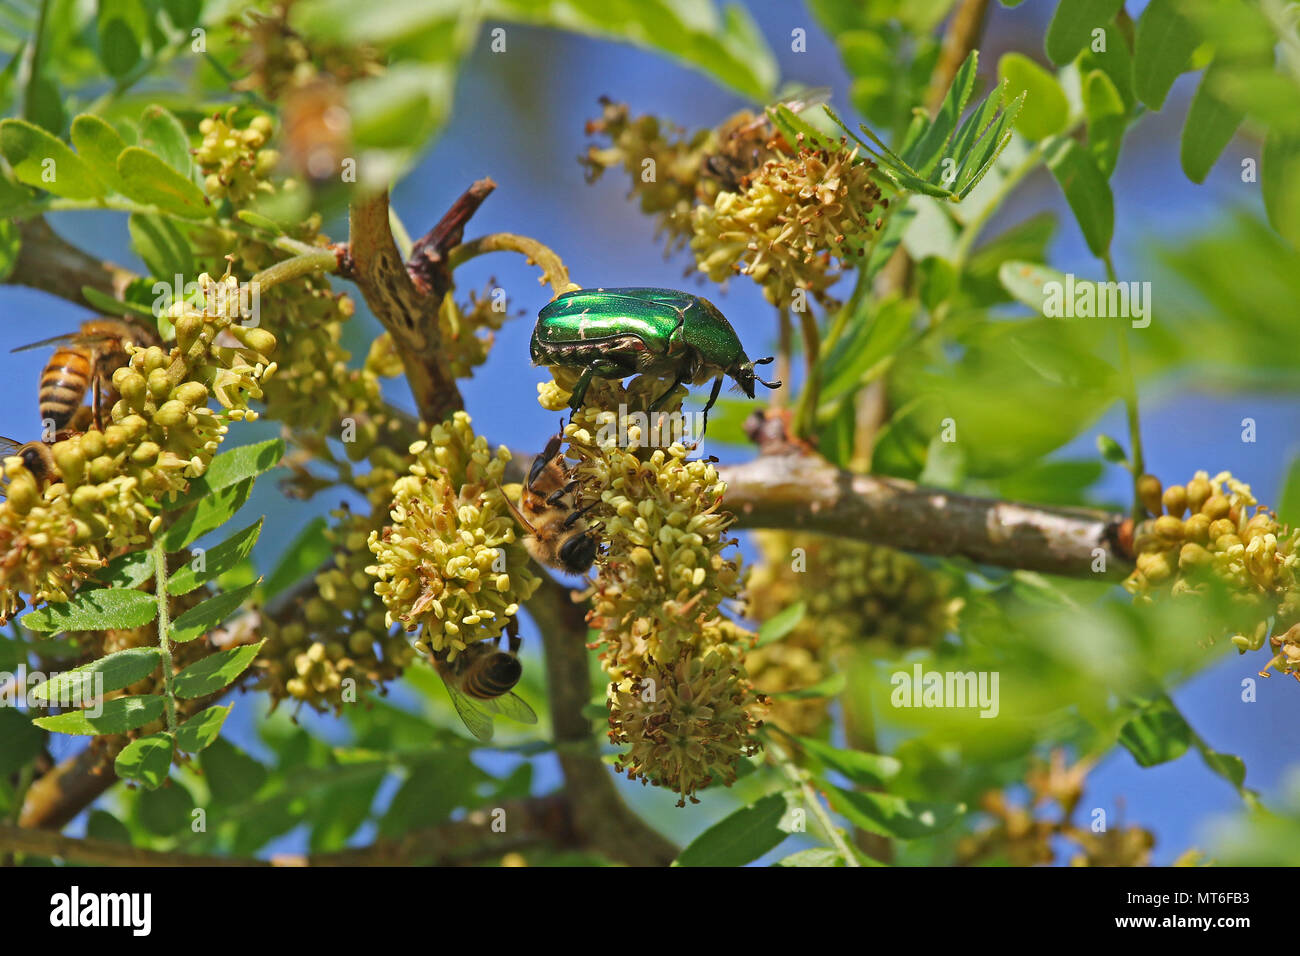 Chafer beetle rose Amérique Cetonia aurata se nourrissant d'un acacia avec du miel d'abeilles Apis mellifera au printemps en Italie Banque D'Images